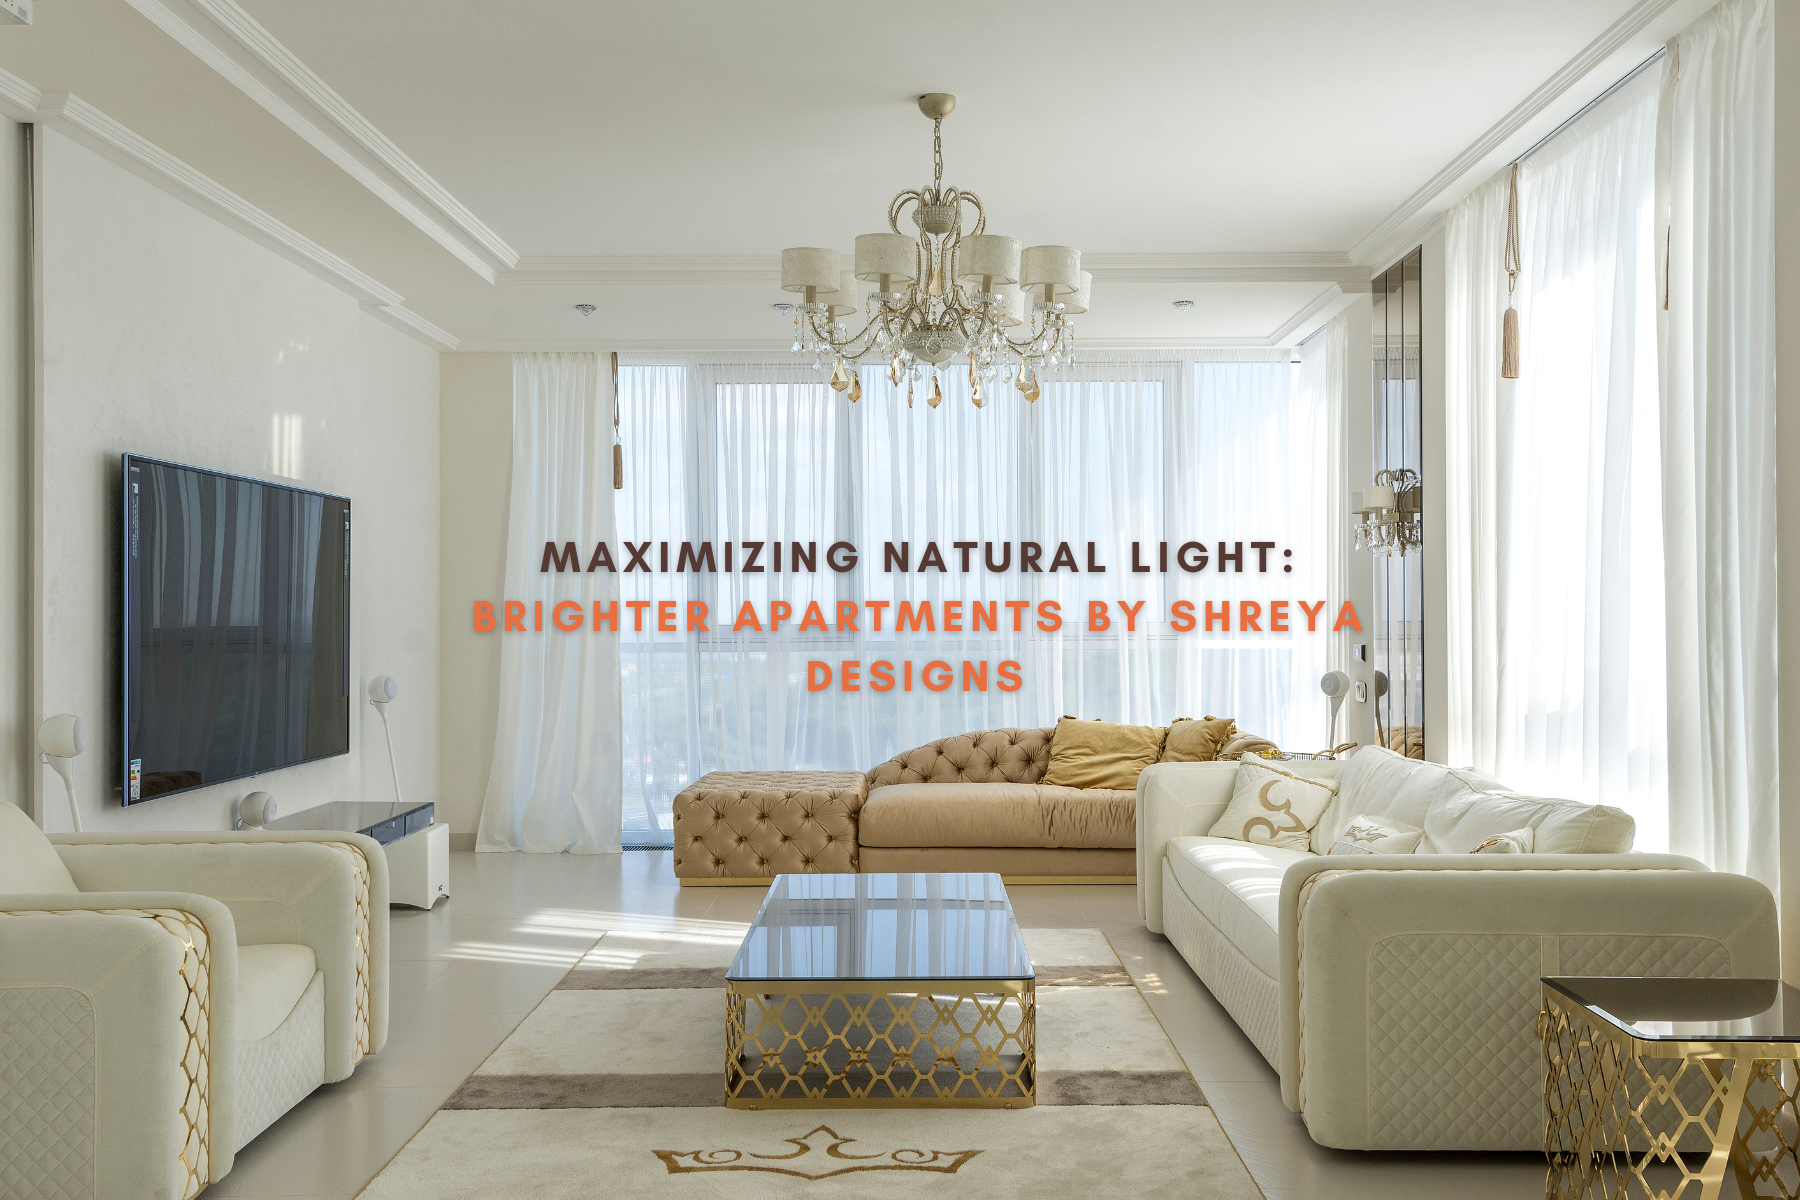 "Maximizing Natural Light: Brighter Apartments by Shreya Designs